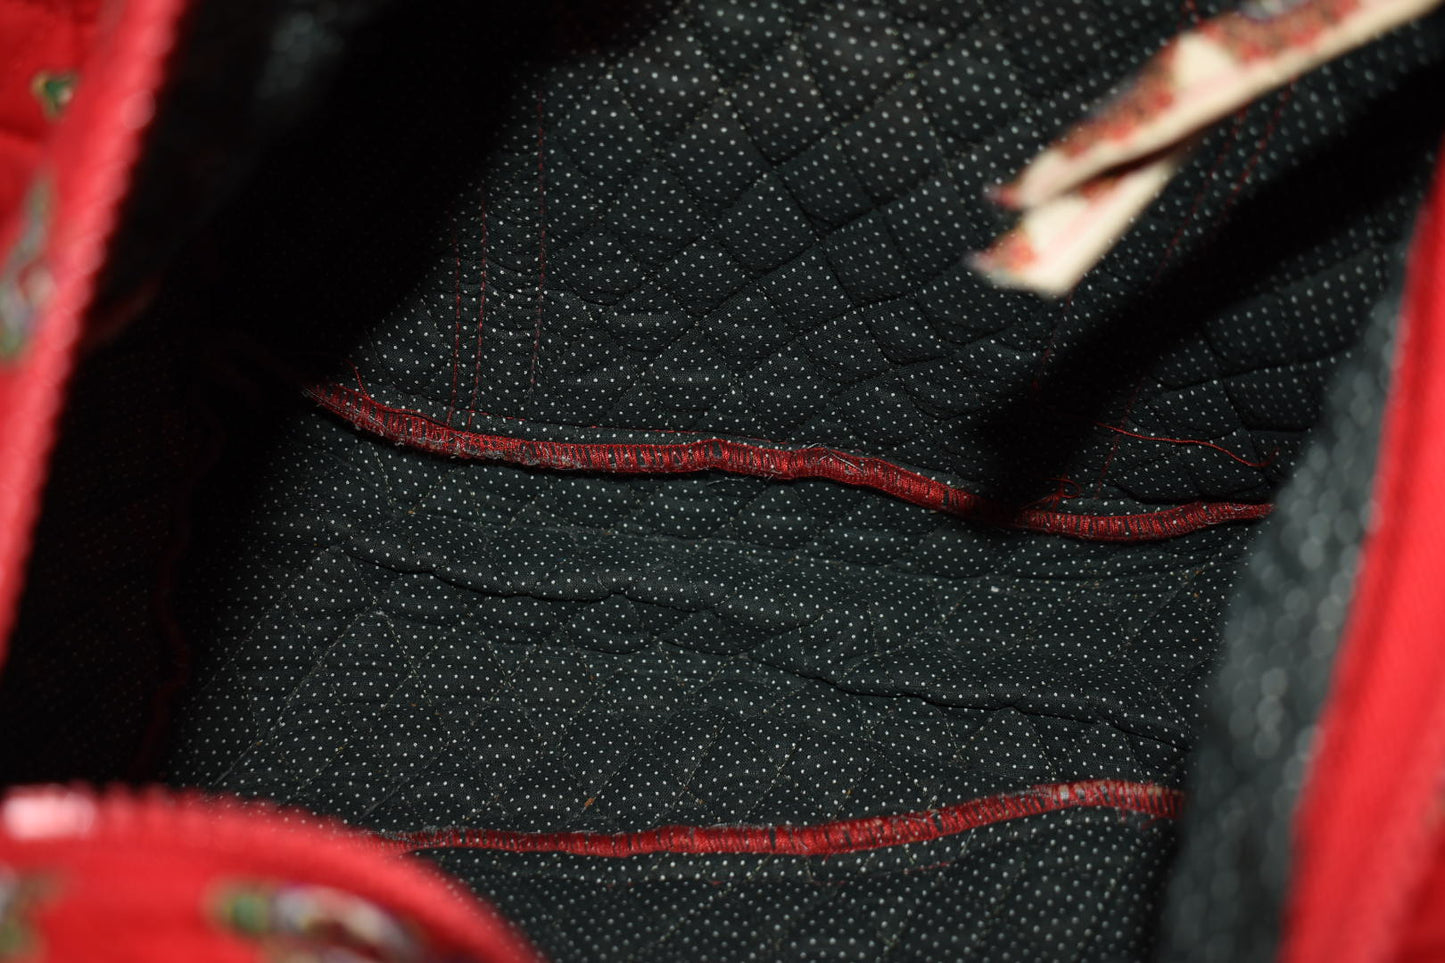 Vintage Vera Bradley Hoosier Shoulder Bag in "Red 1991" Pattern